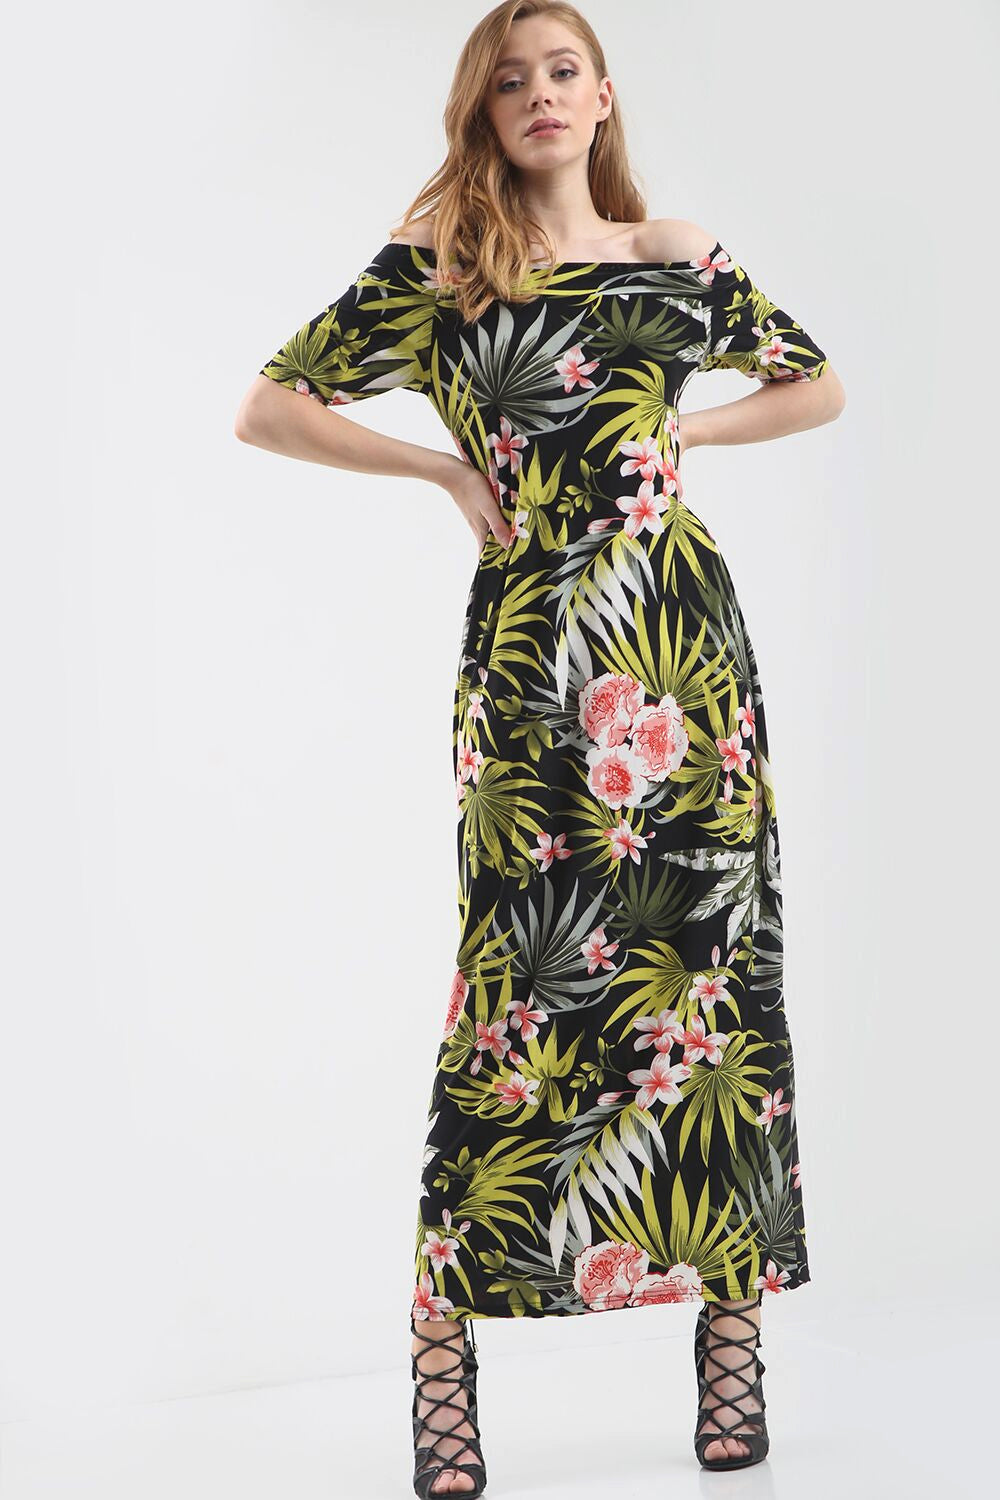 Off Shoulder Green Tropical Print Maxi Dress - bejealous-com